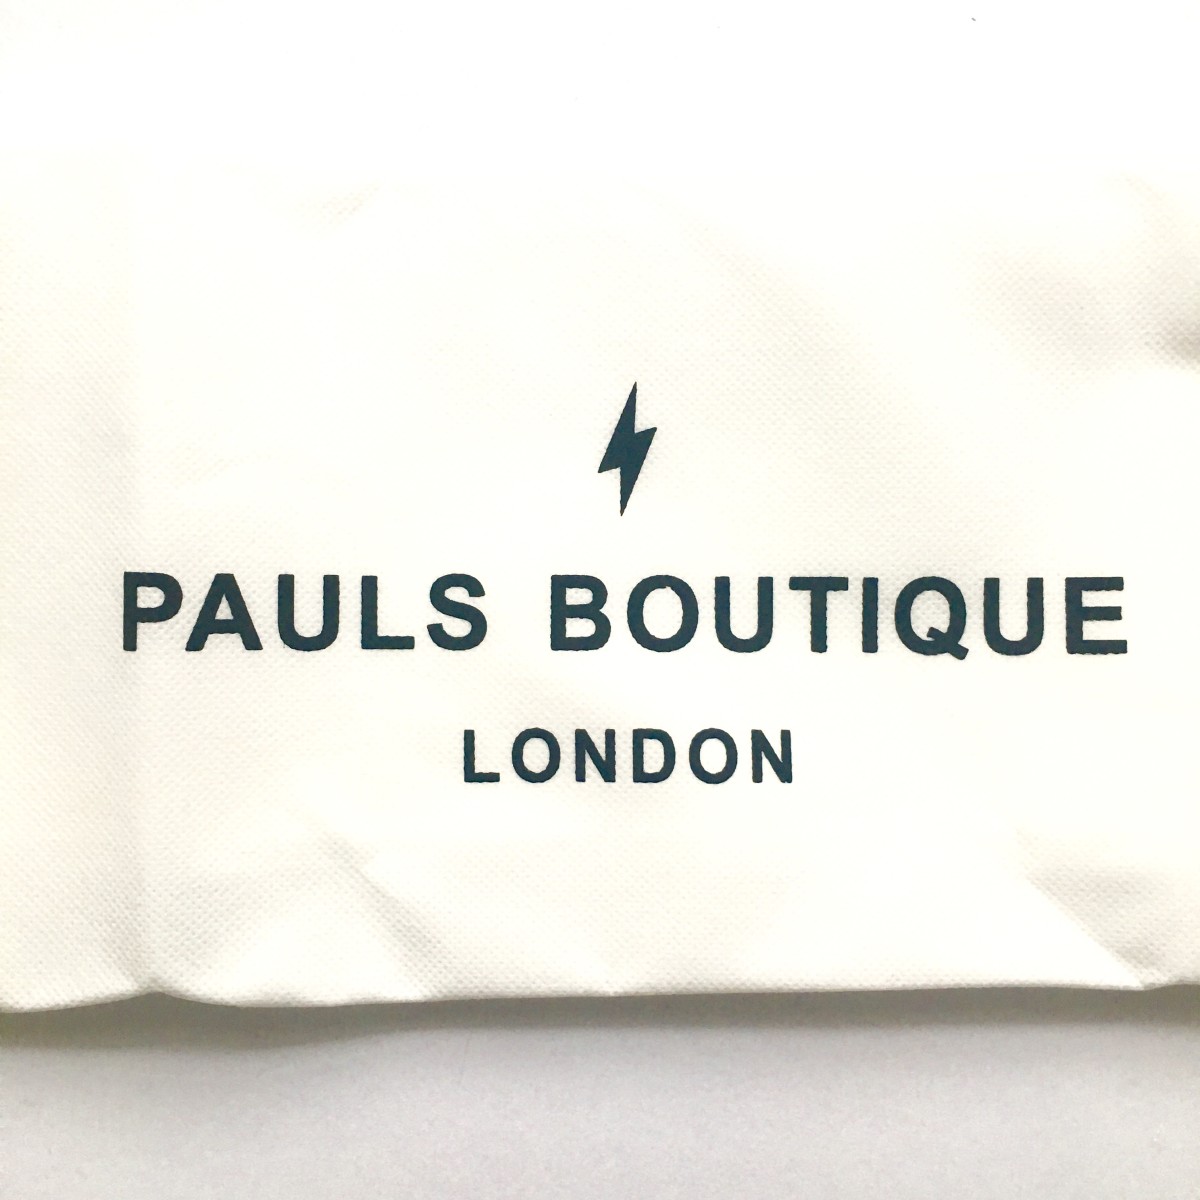 Pauls Boutique London » ArielleDannique